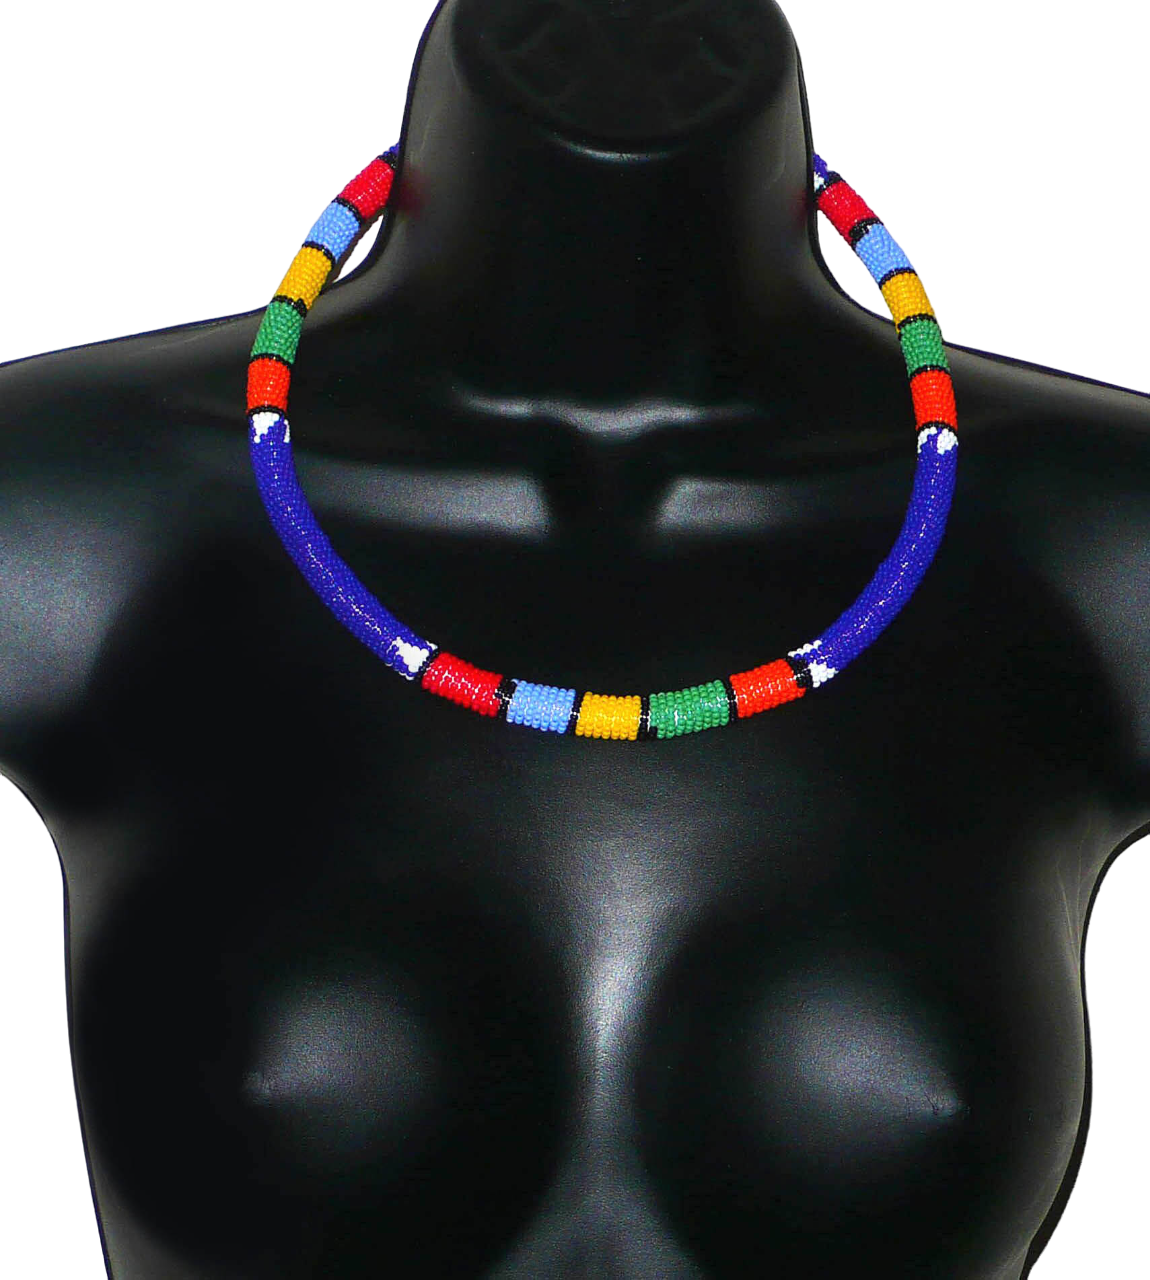 Collier sud-africain tubulaire bleu et multicolore. Il se compose d'un tube de plastique autour duquel sont enroulées des petites perles de rocaille bleues alternées avec des motifs ethniques traditionnels zoulous rouges, bleu ciel, jaunes, verts et orange. Le collier mesure 22 cm de long (de la nuque jusqu'à la base du collier), la longueur du tour de cou du collier est 56 cm, et son épaisseur est de 1 cm. Il s'attache avec un fermoir à boule. Collier photographié sur un mannequin. Timeless Fineries